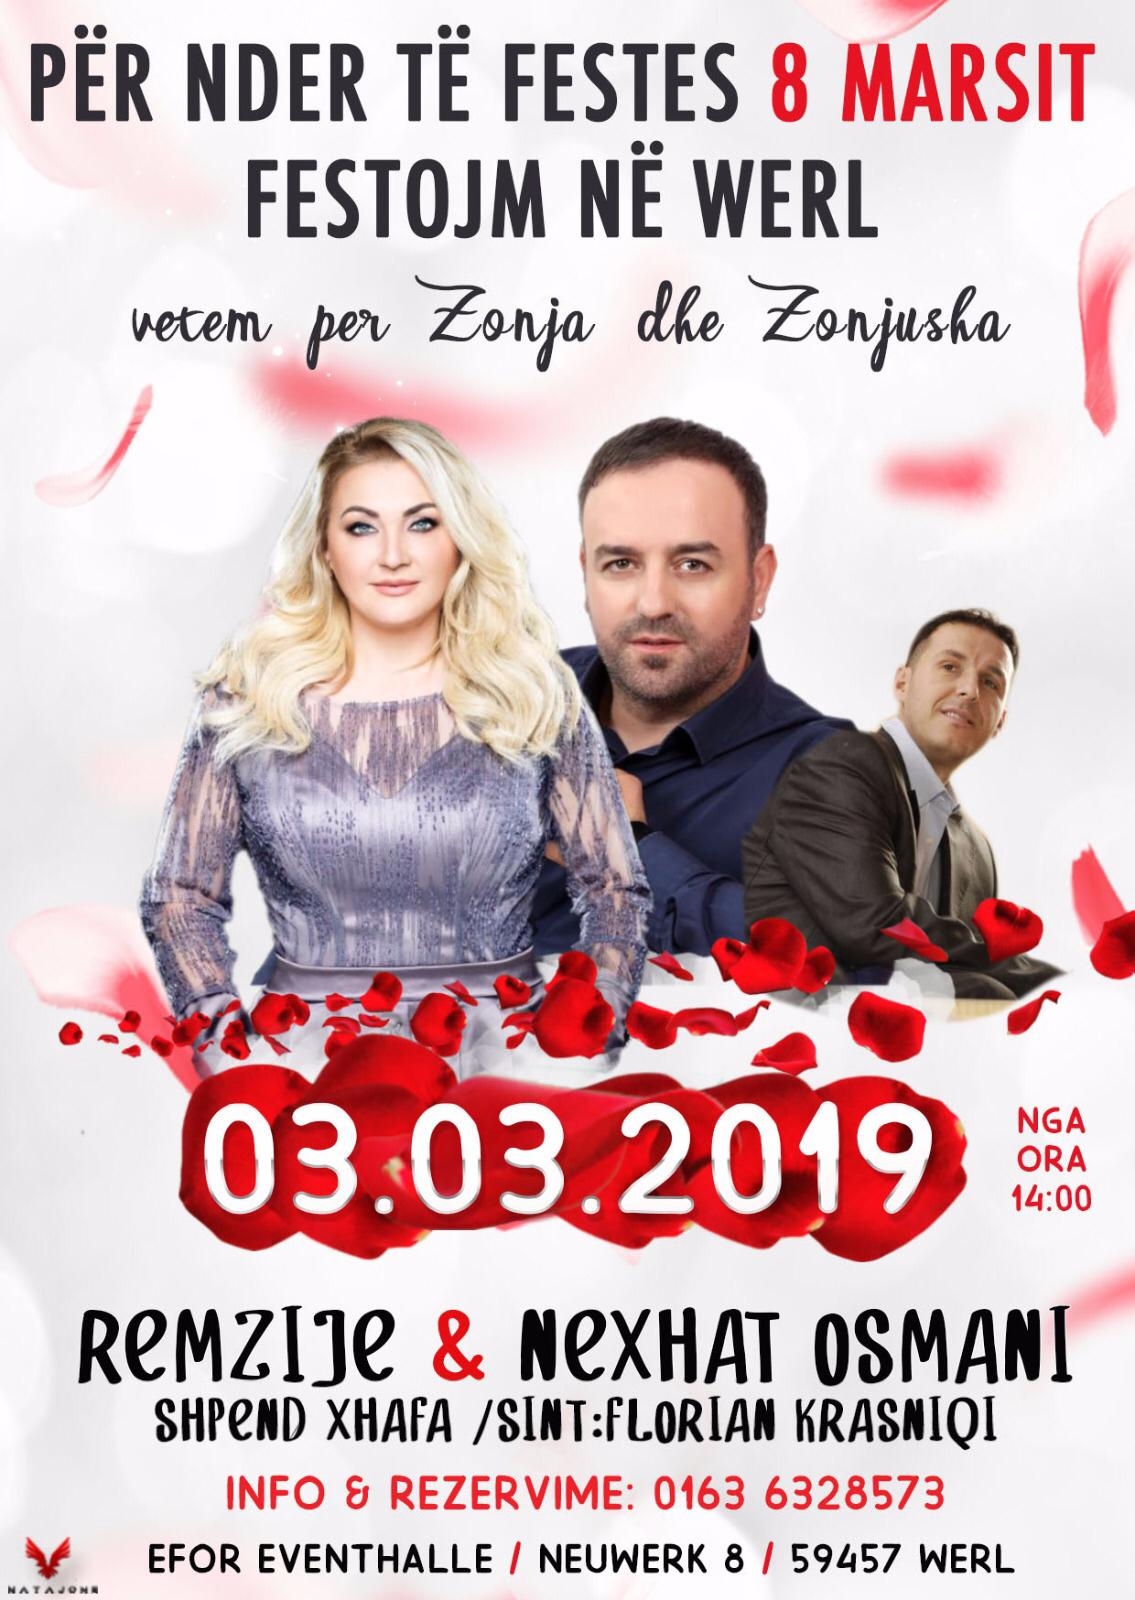 Festojm 8 Marsin në Werl me Remzije & Nexhat Osmani